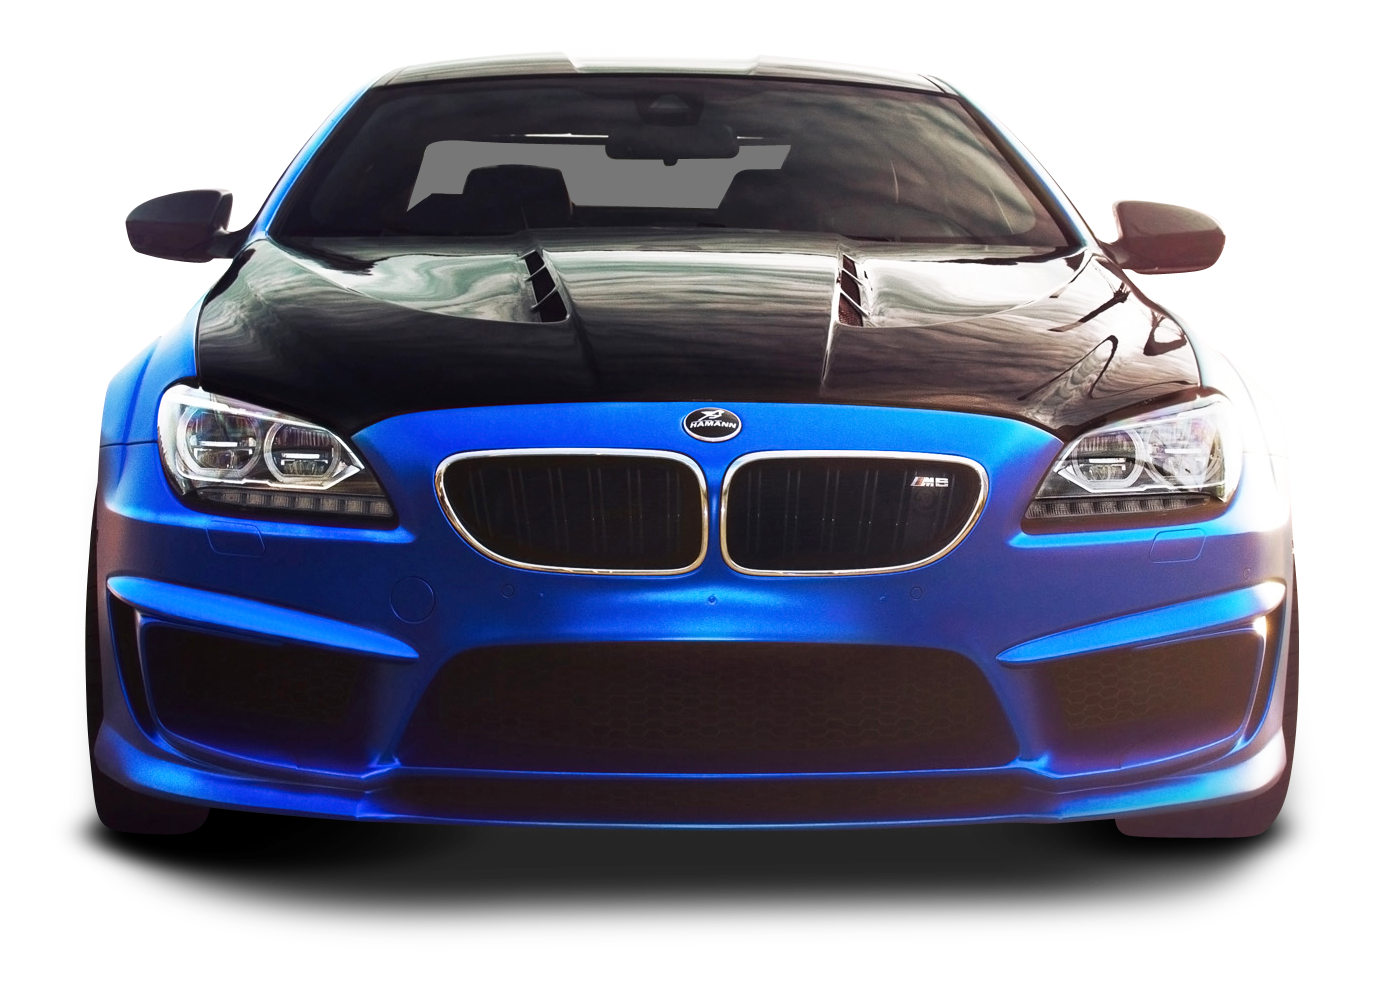 BMW M6 Blue Car